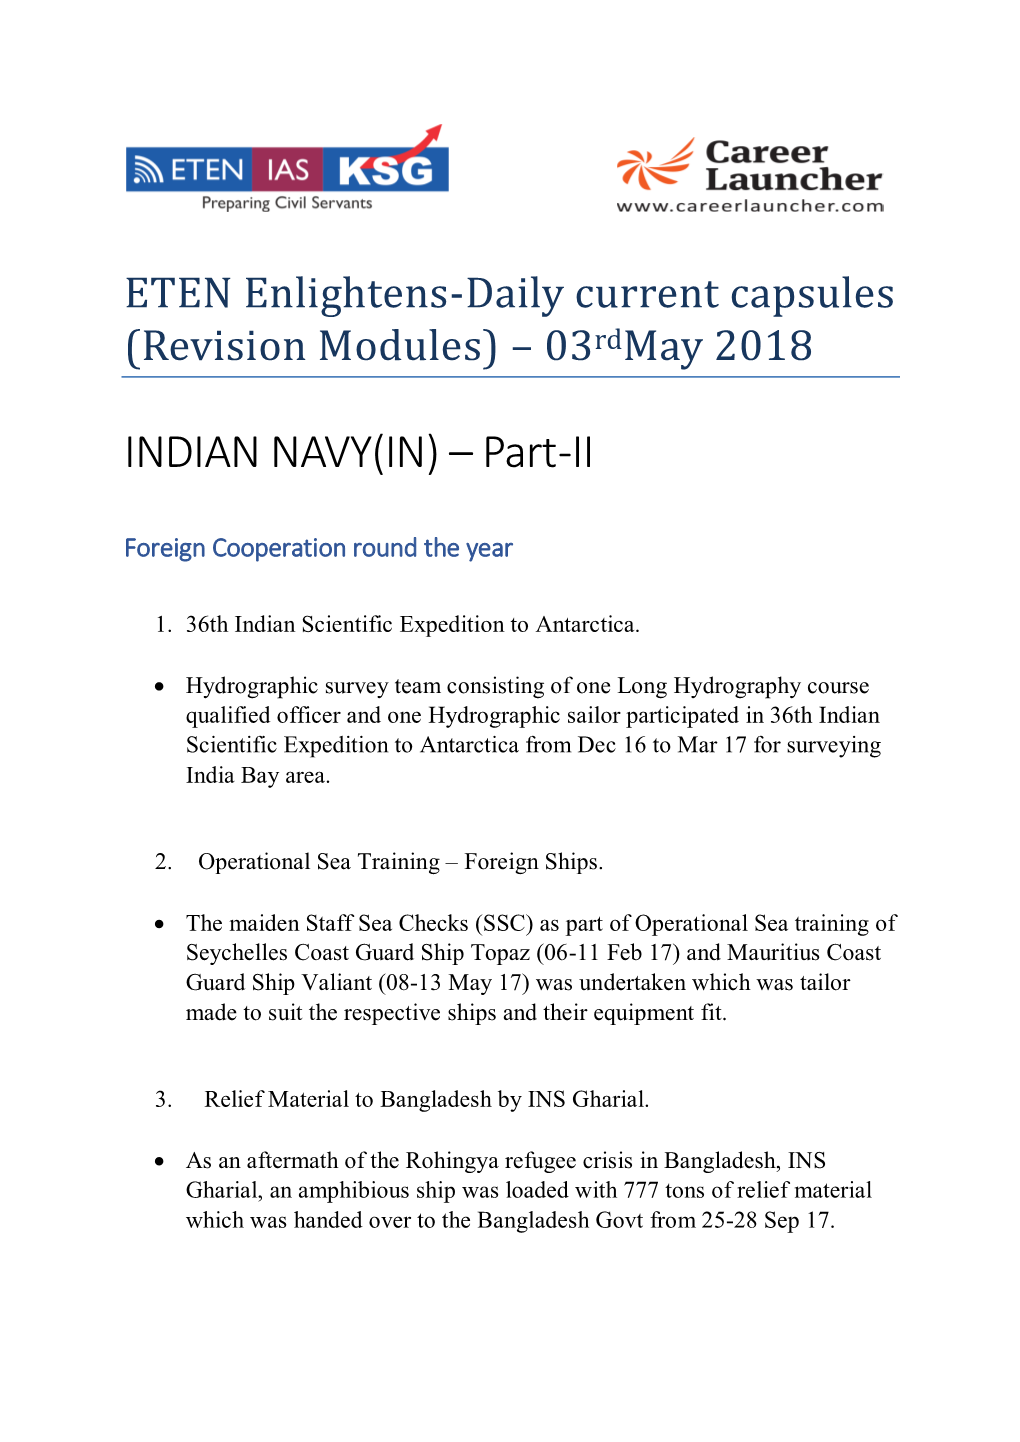 INDIAN NAVY(IN) – Part -II